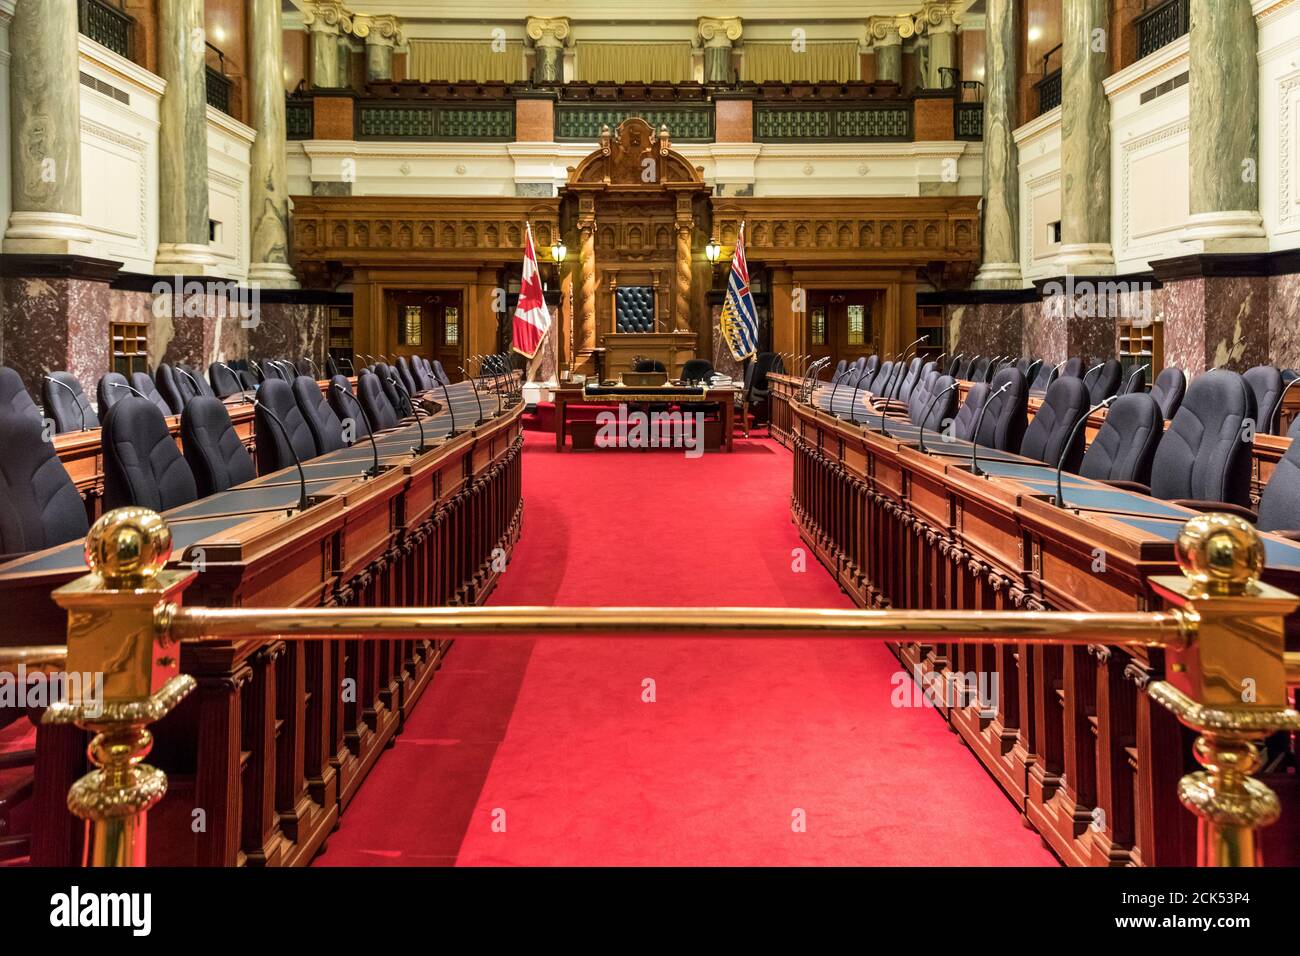 Interior of the British Columbia Provincial Legislative Chamber in Victoria, BC, Canada Stock Photo